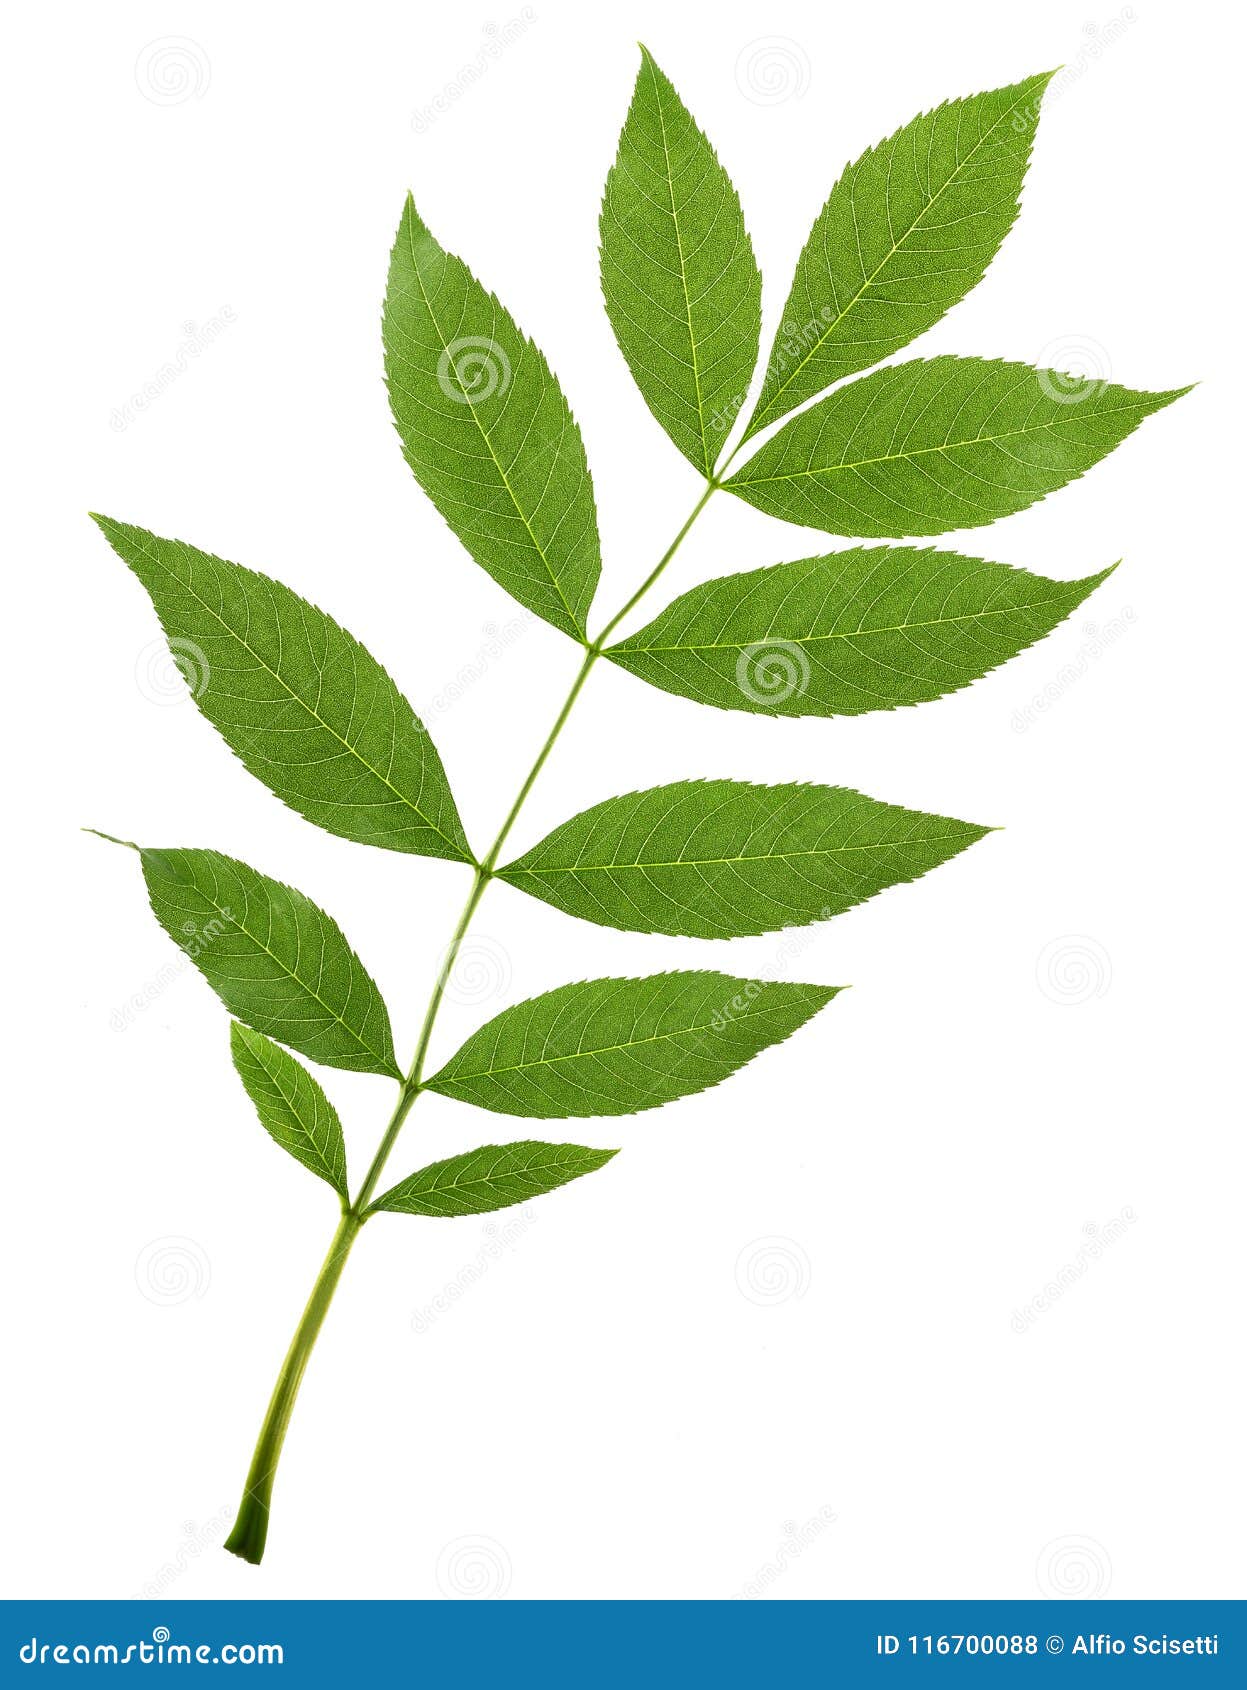 green ash branch